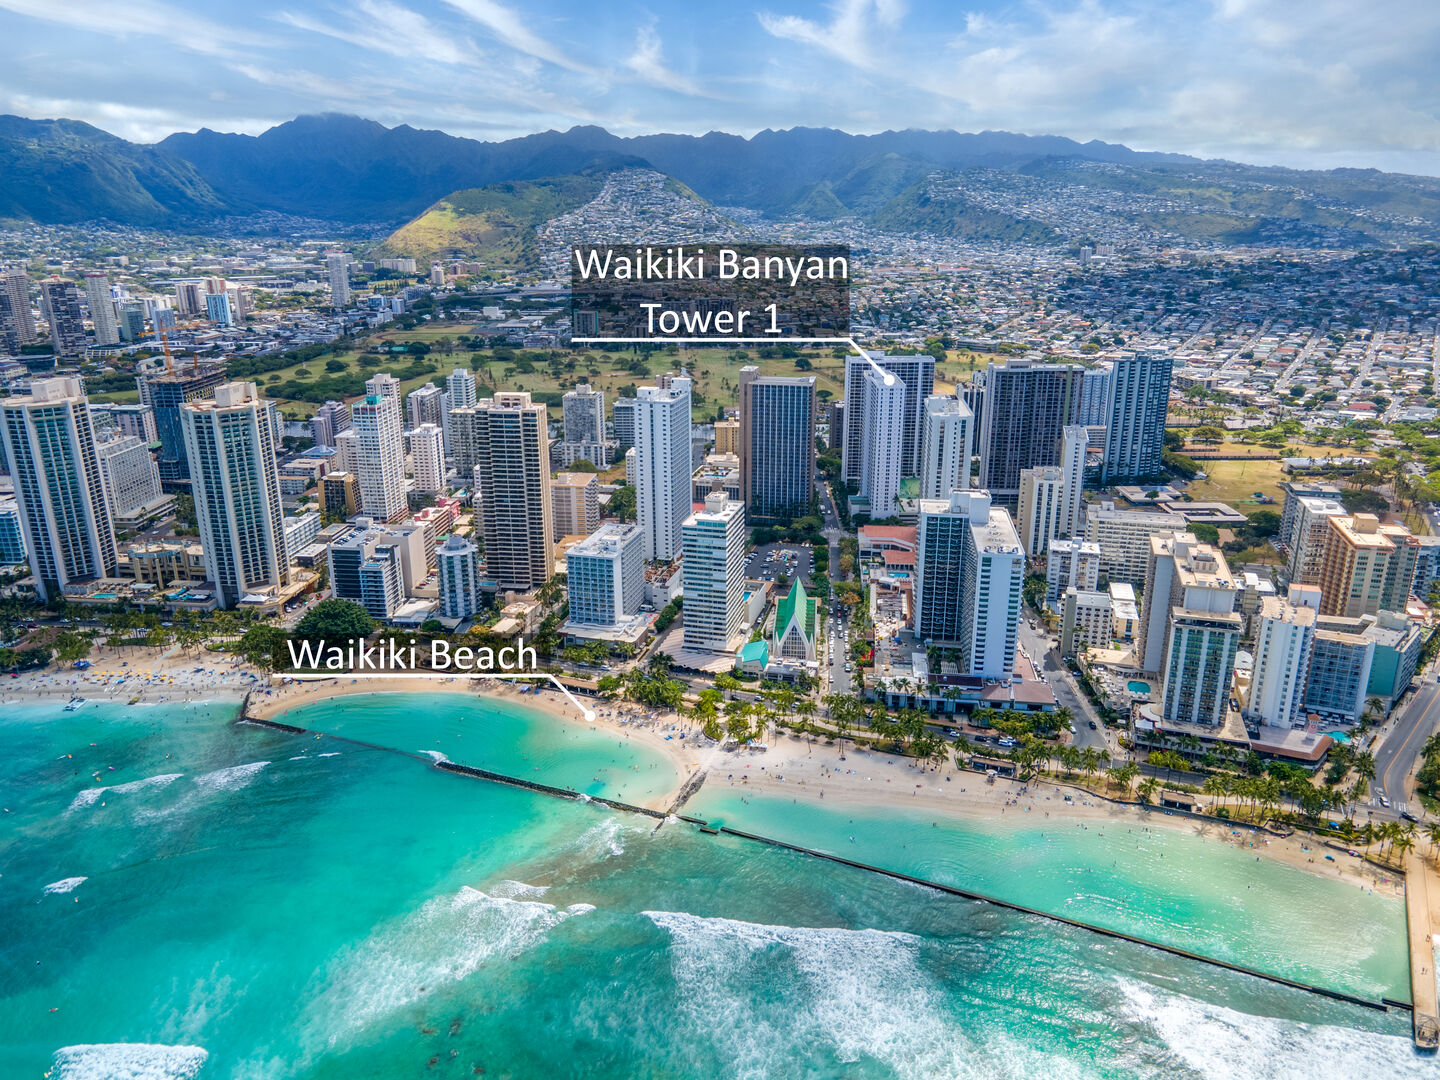 Location of the Waikiki Banyan